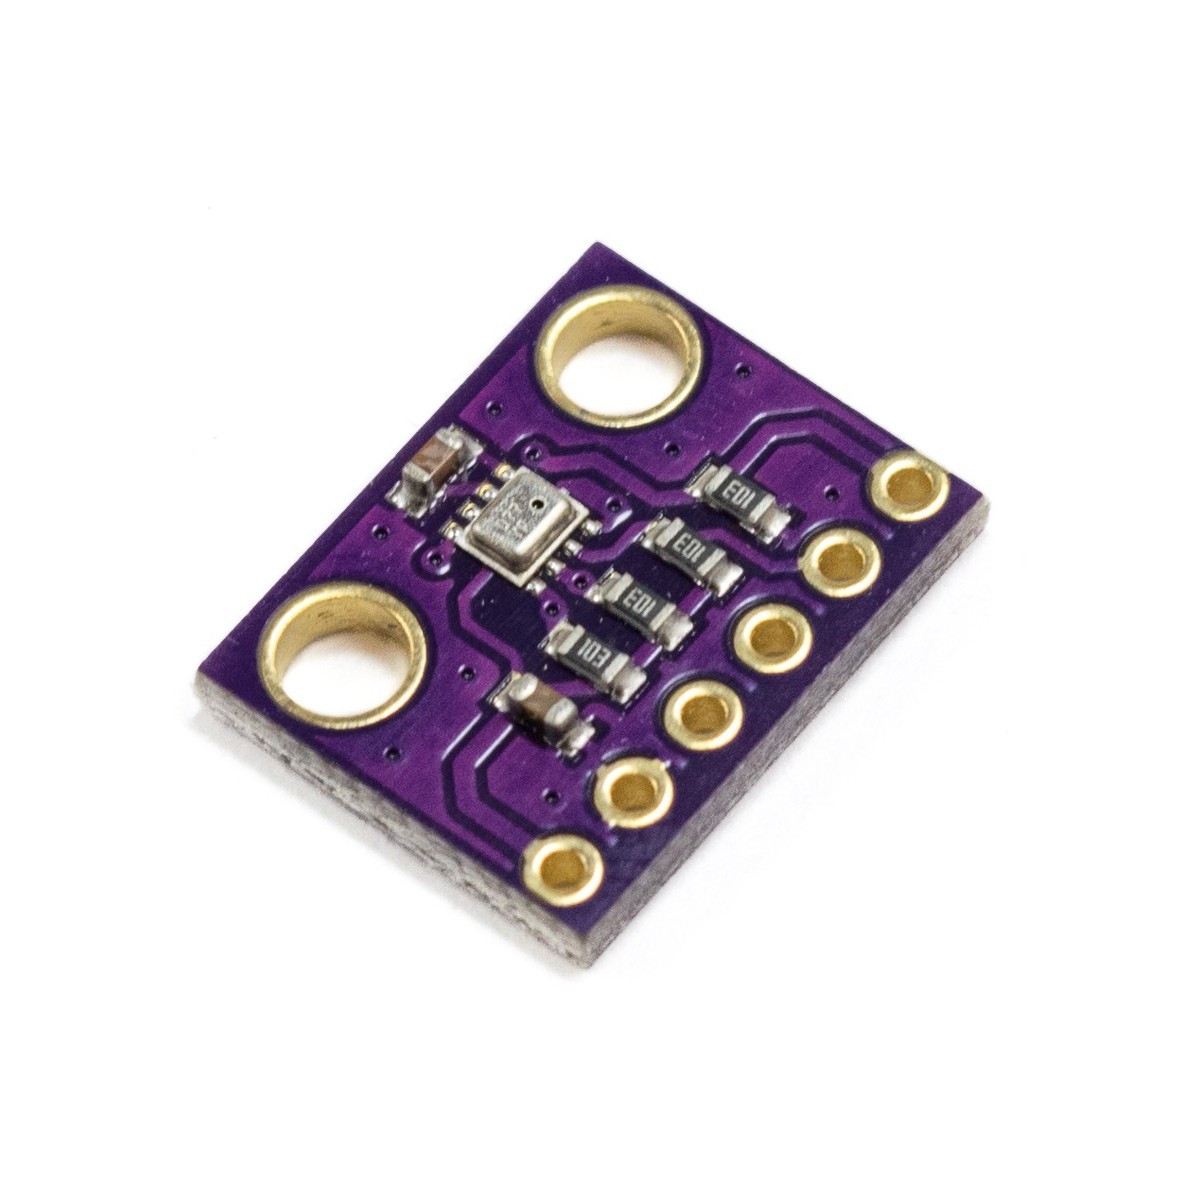 ⭐ BME-280 BME280 sensor de presión de humedad temperatura de precisión para Arduino-Pi ⭐ 